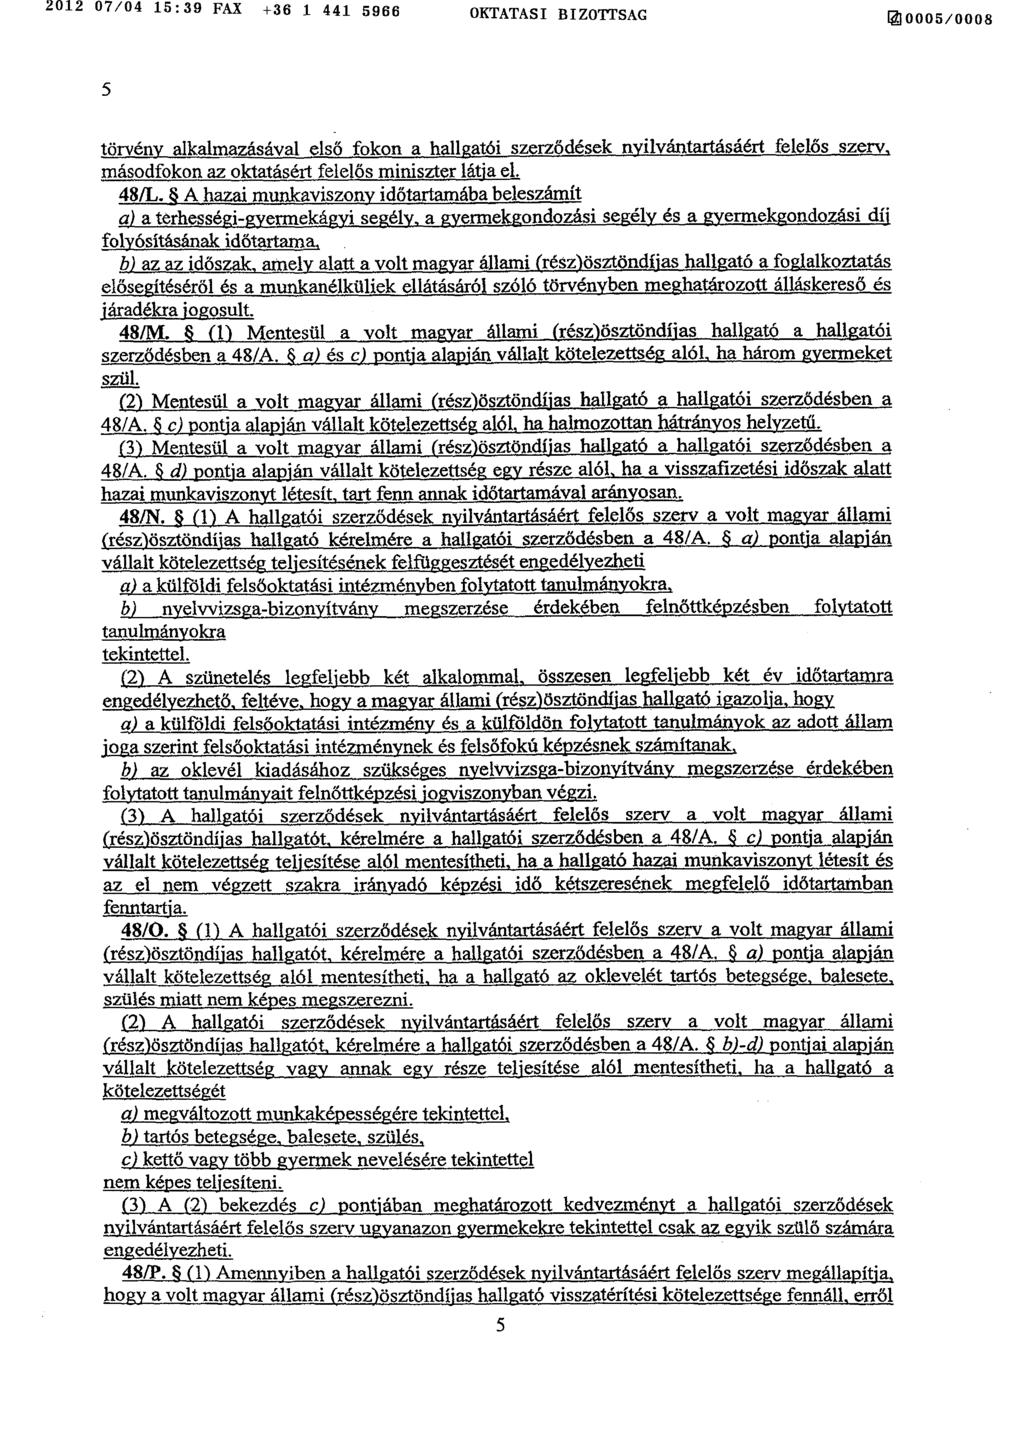 2012 07/04 15 :39 FAX +36 1 441 5966 OKTATASI BIZOTTSAG fj0005/000 8 5 törvény alkalmazásával els ő fokon a hallgatói szerződések nyilvántartásáért felelős szerv, másodfokon az oktatásért felel ős